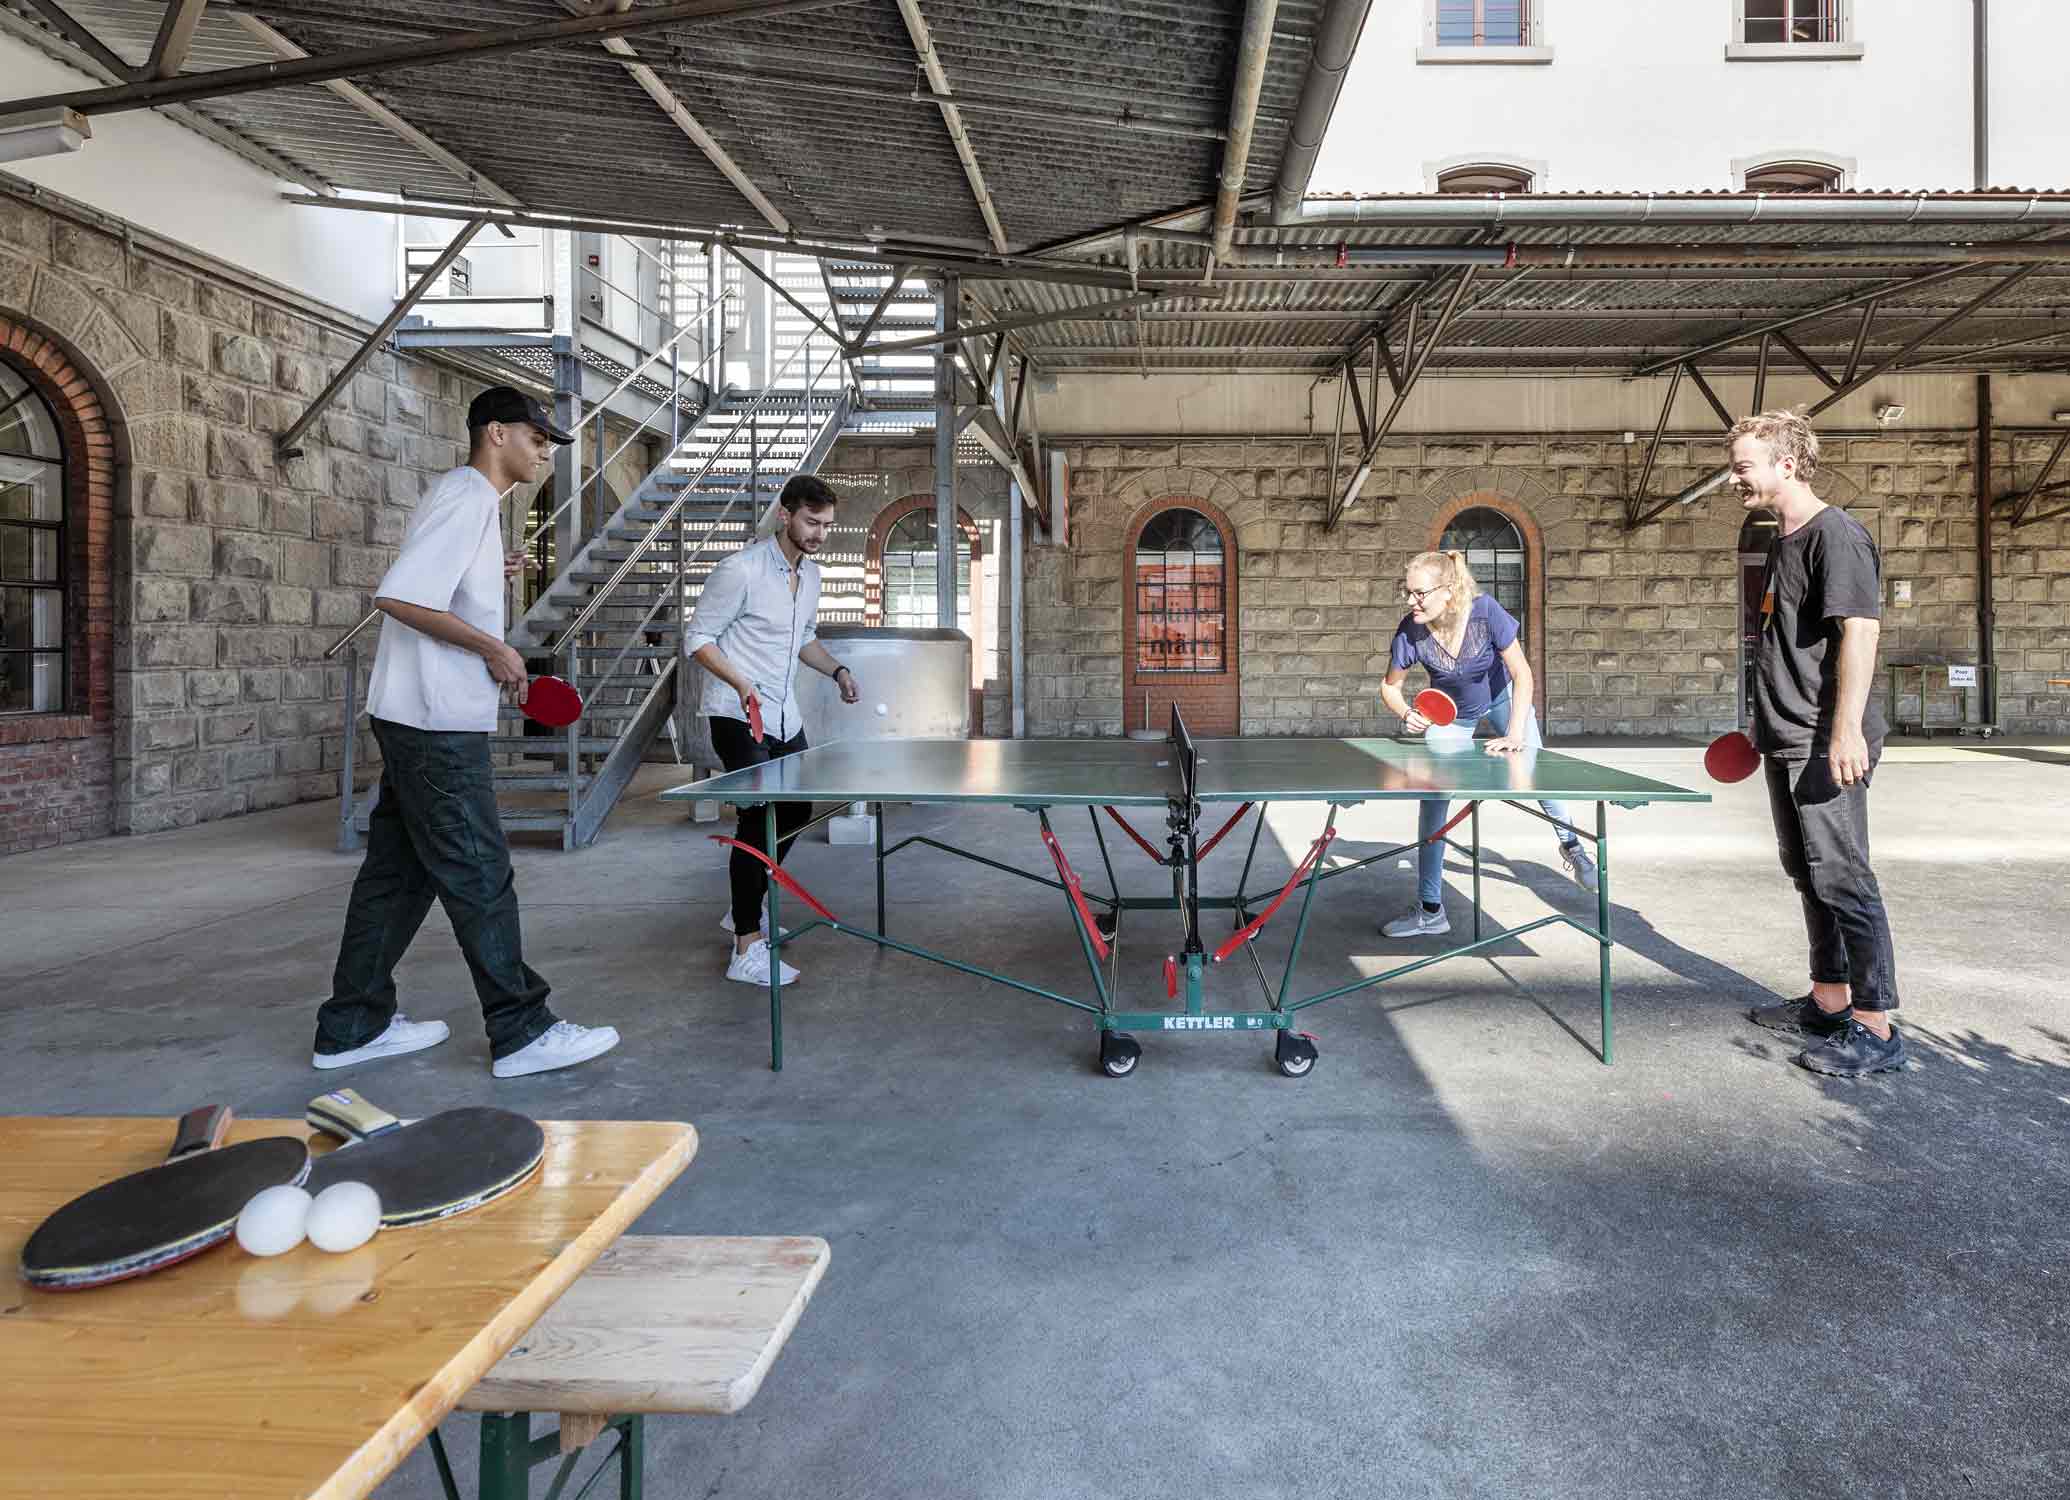 Tischtennis im Hof von der Untermueli, Zug. Fotografiert von Regine Giesecke Architecture Photography GmbH